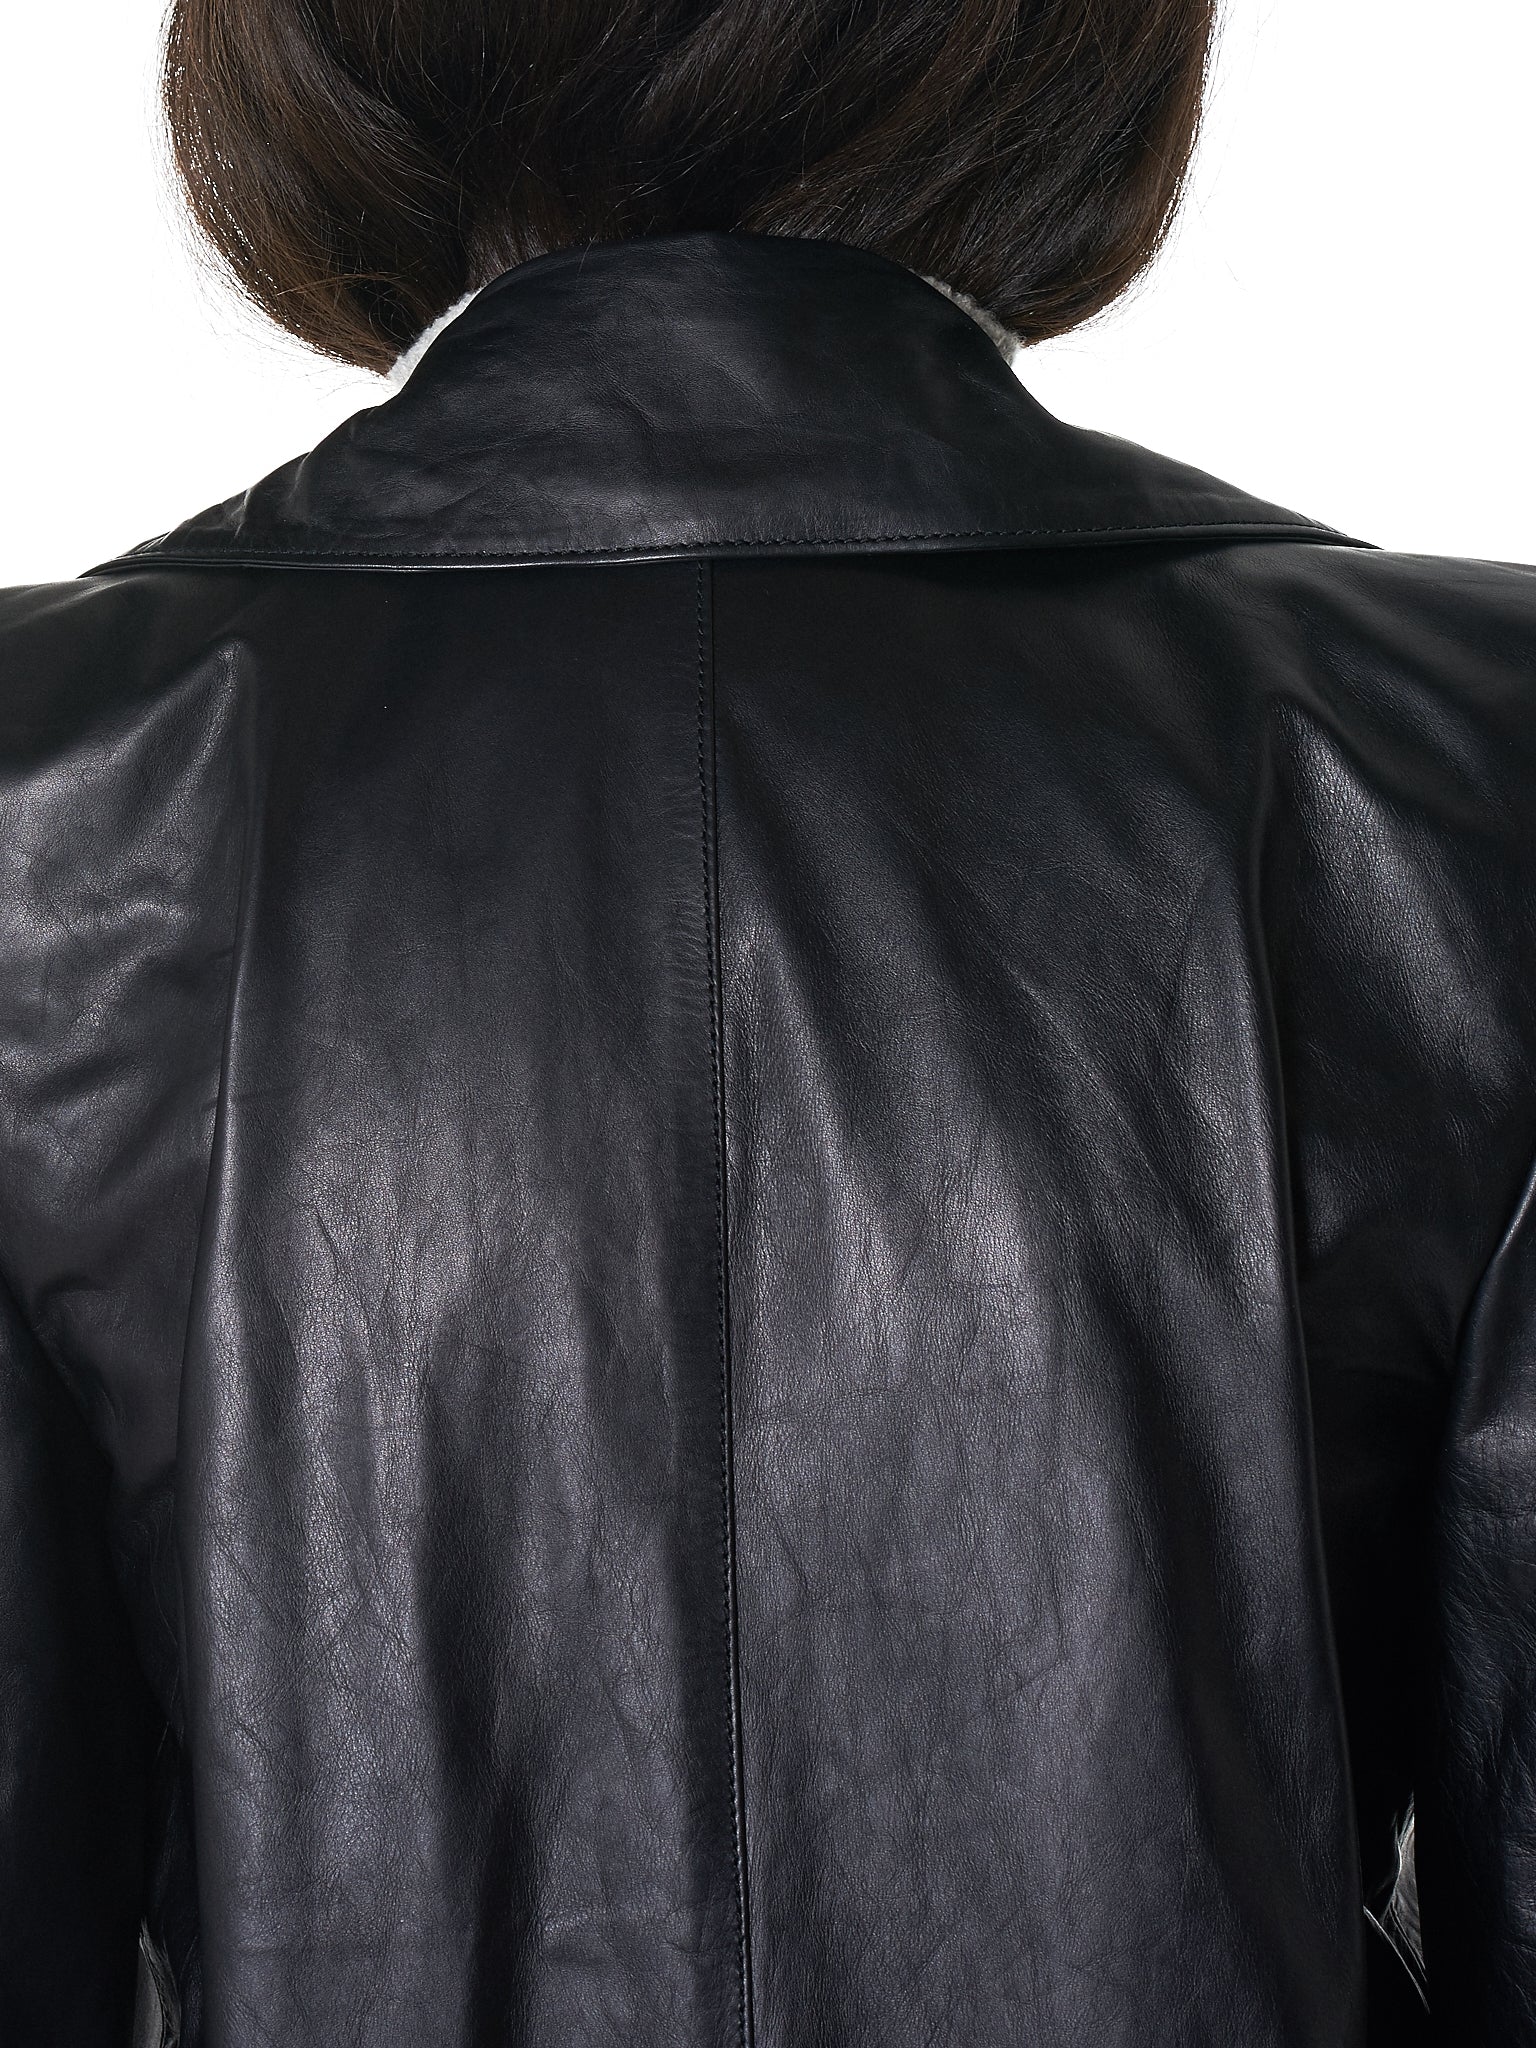 Unravel Leather Coat - Hlorenzo Detail 3